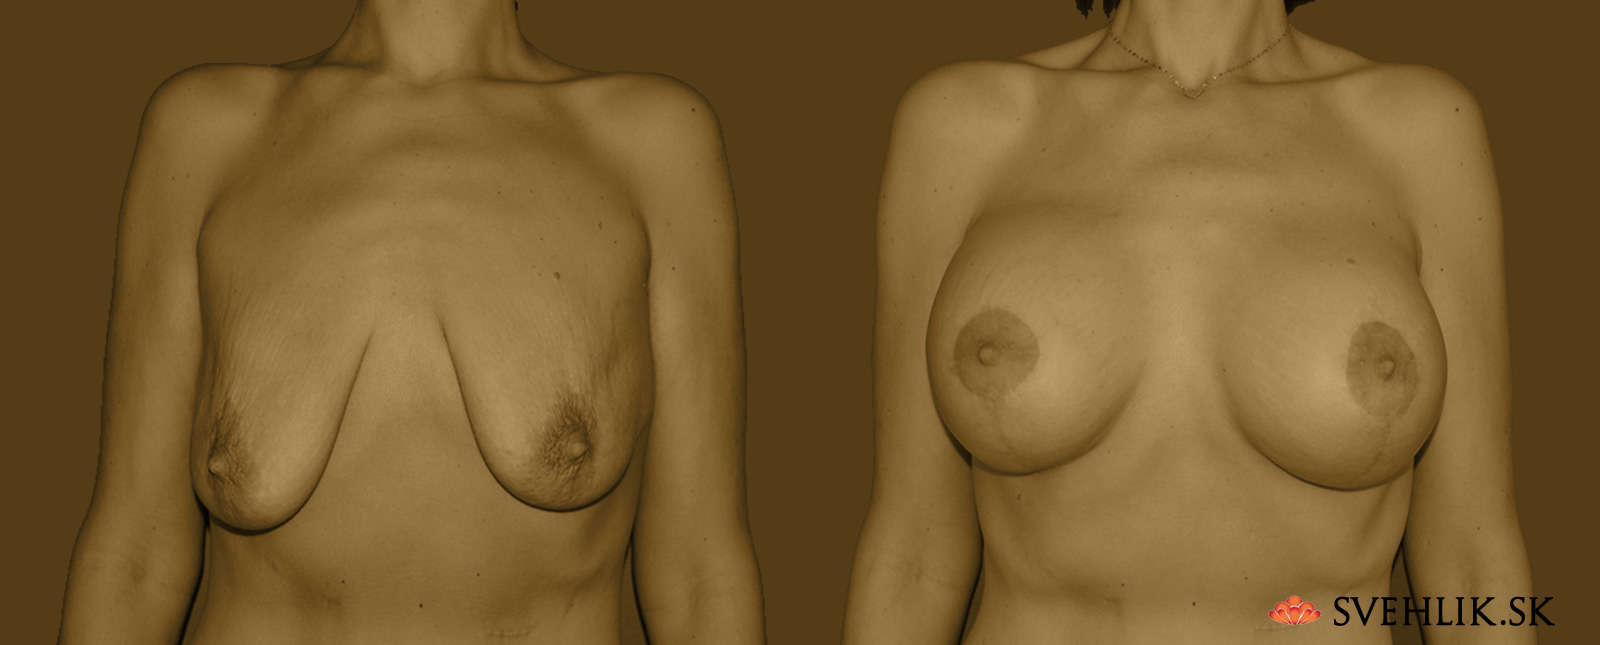 Kombinovaný operačný zákrok – augmentácia a modelácia prsníkov - Pred/Po